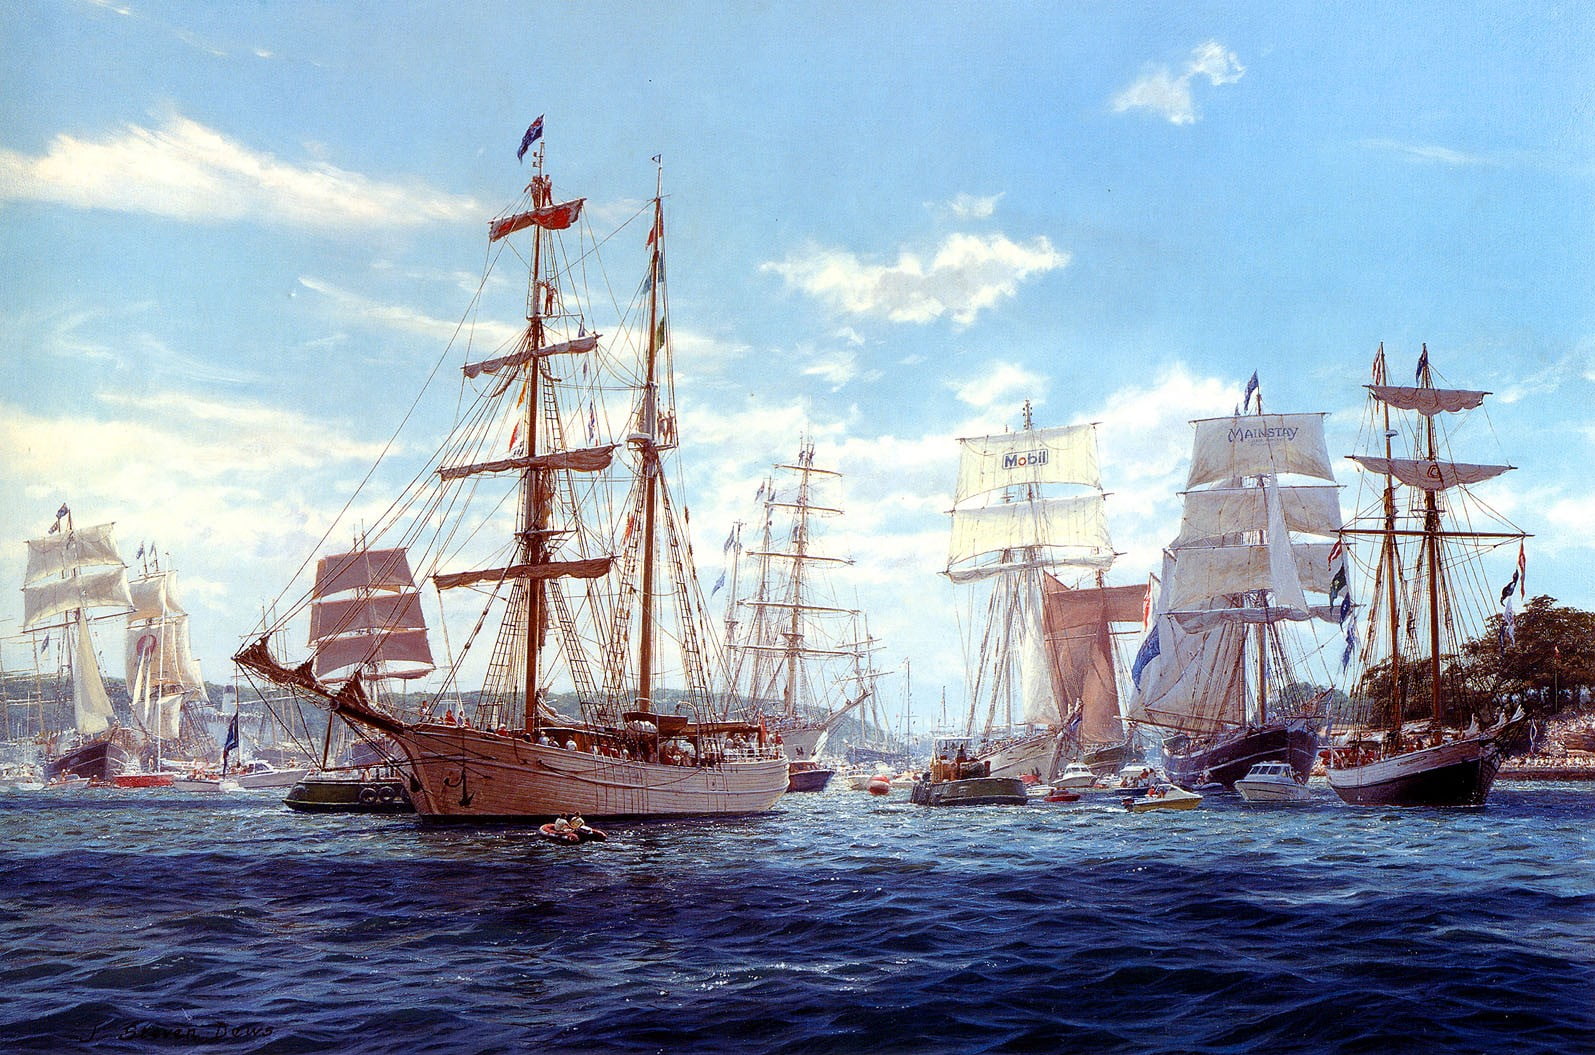 brown wooden galleon ships, tug boats, old ship, sailing ship, artwork